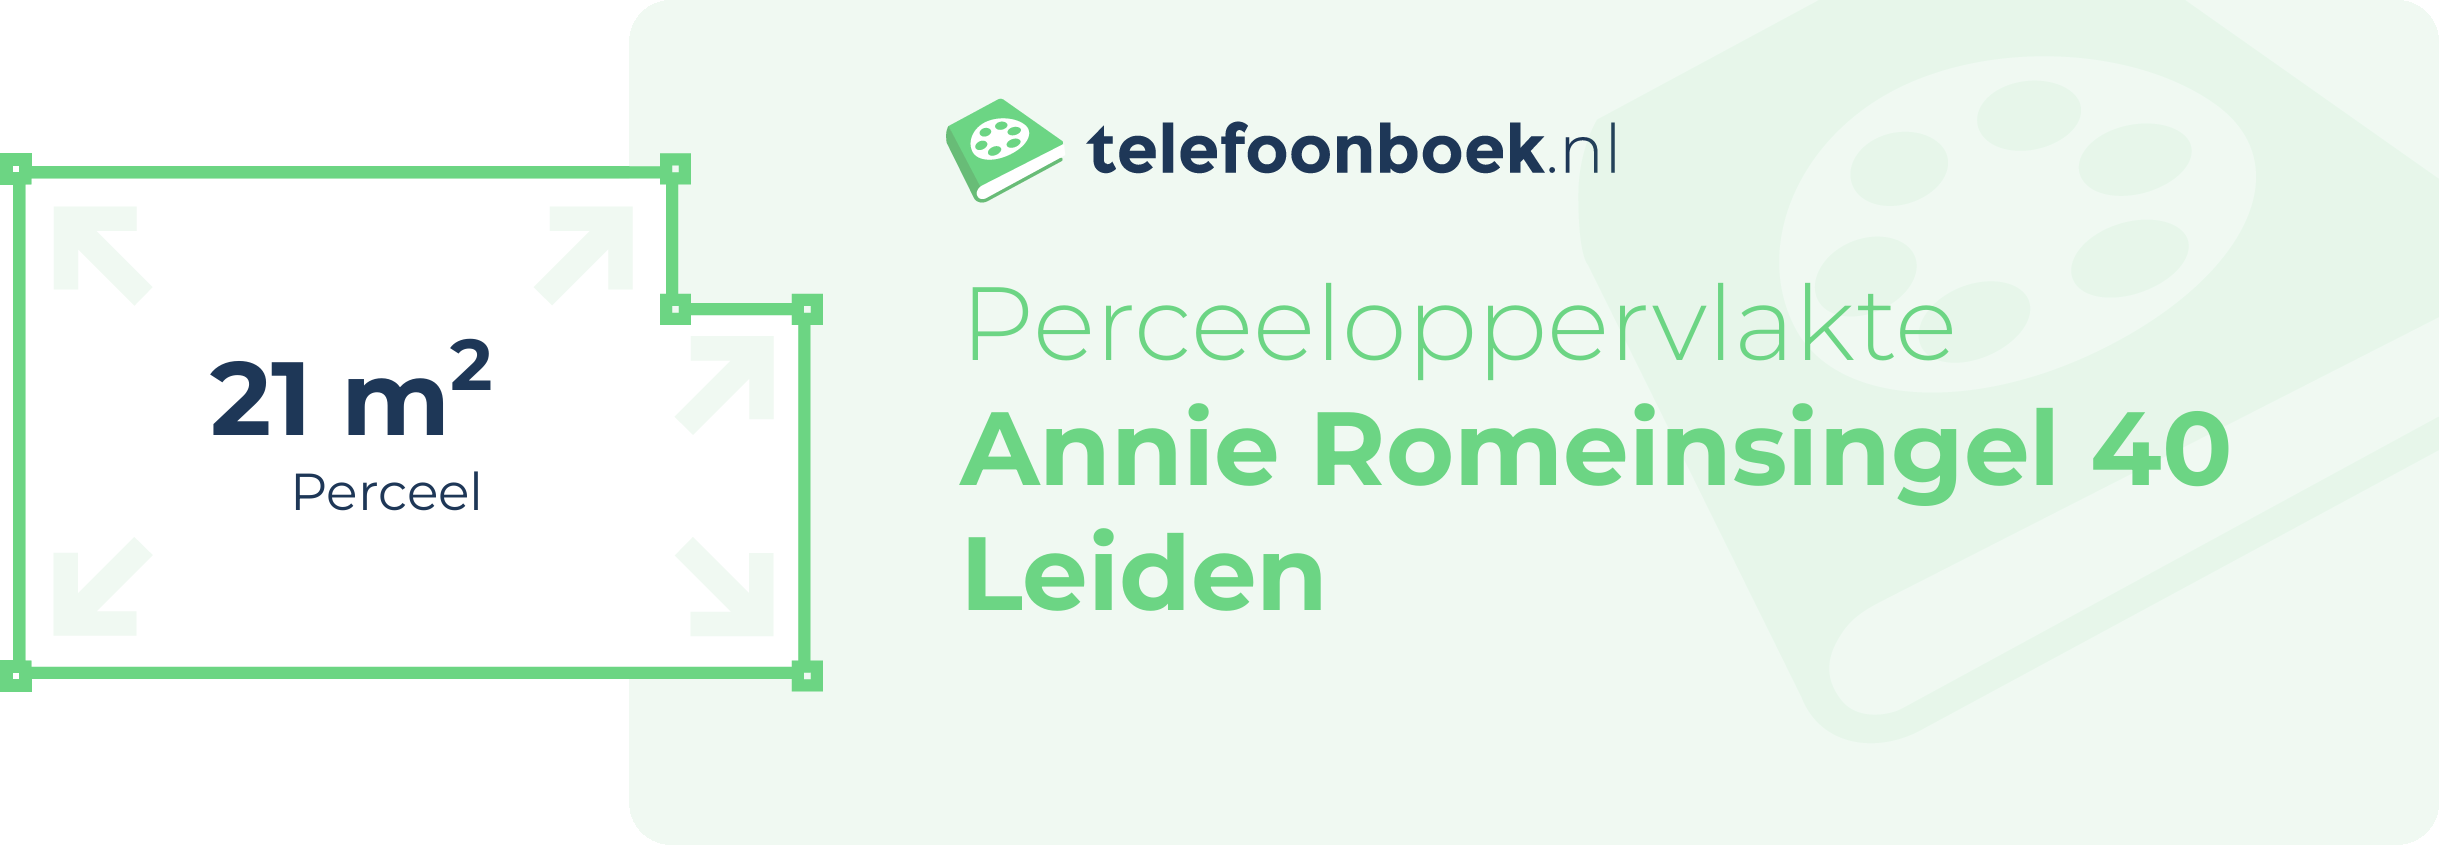 Perceeloppervlakte Annie Romeinsingel 40 Leiden